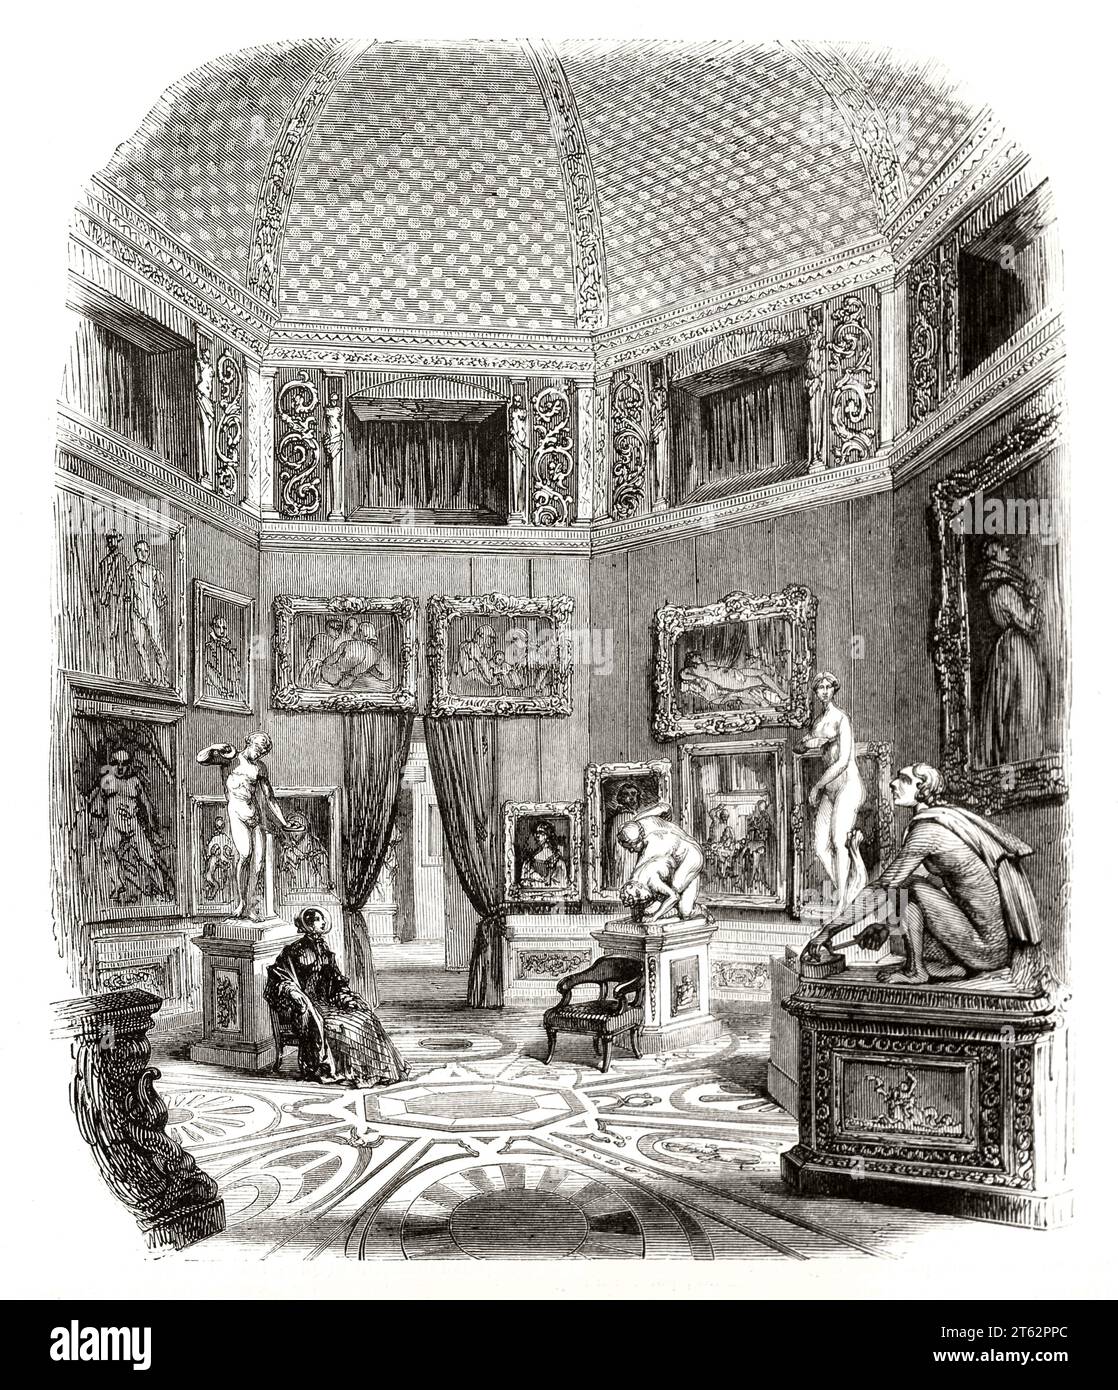 Vue ancienne du Tribuna : salle octogonale dans la galerie des Offices, Florence, Italie. Par Piaud, publ. Sur magasin pittoresque, Paris, 1849 Banque D'Images